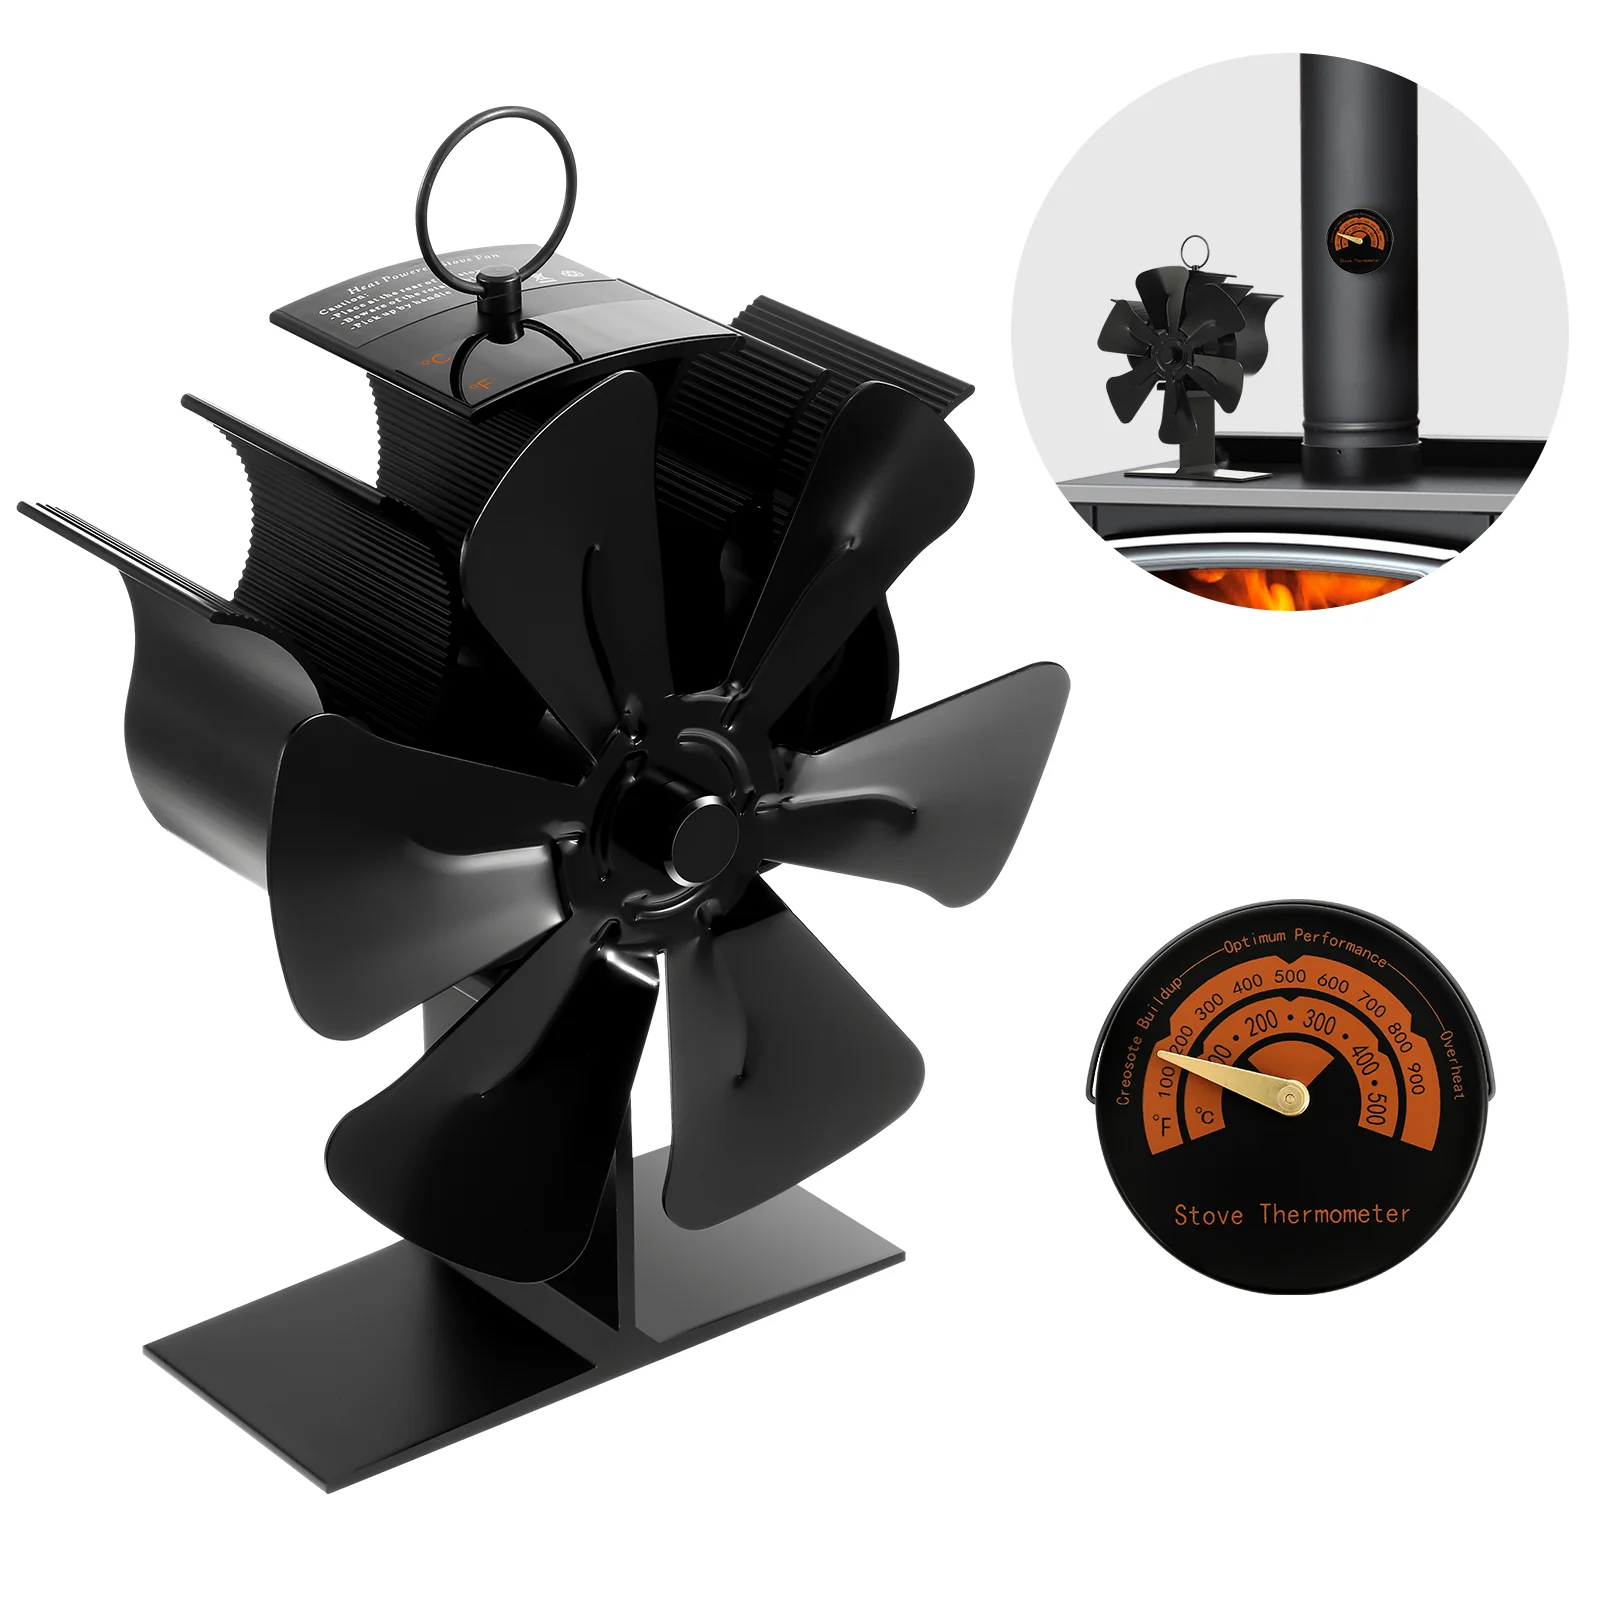 

Вентилятор для печи, работающий от тепловой энергии для дровяной плиты и камина-эффективное распределение тепла без электричества